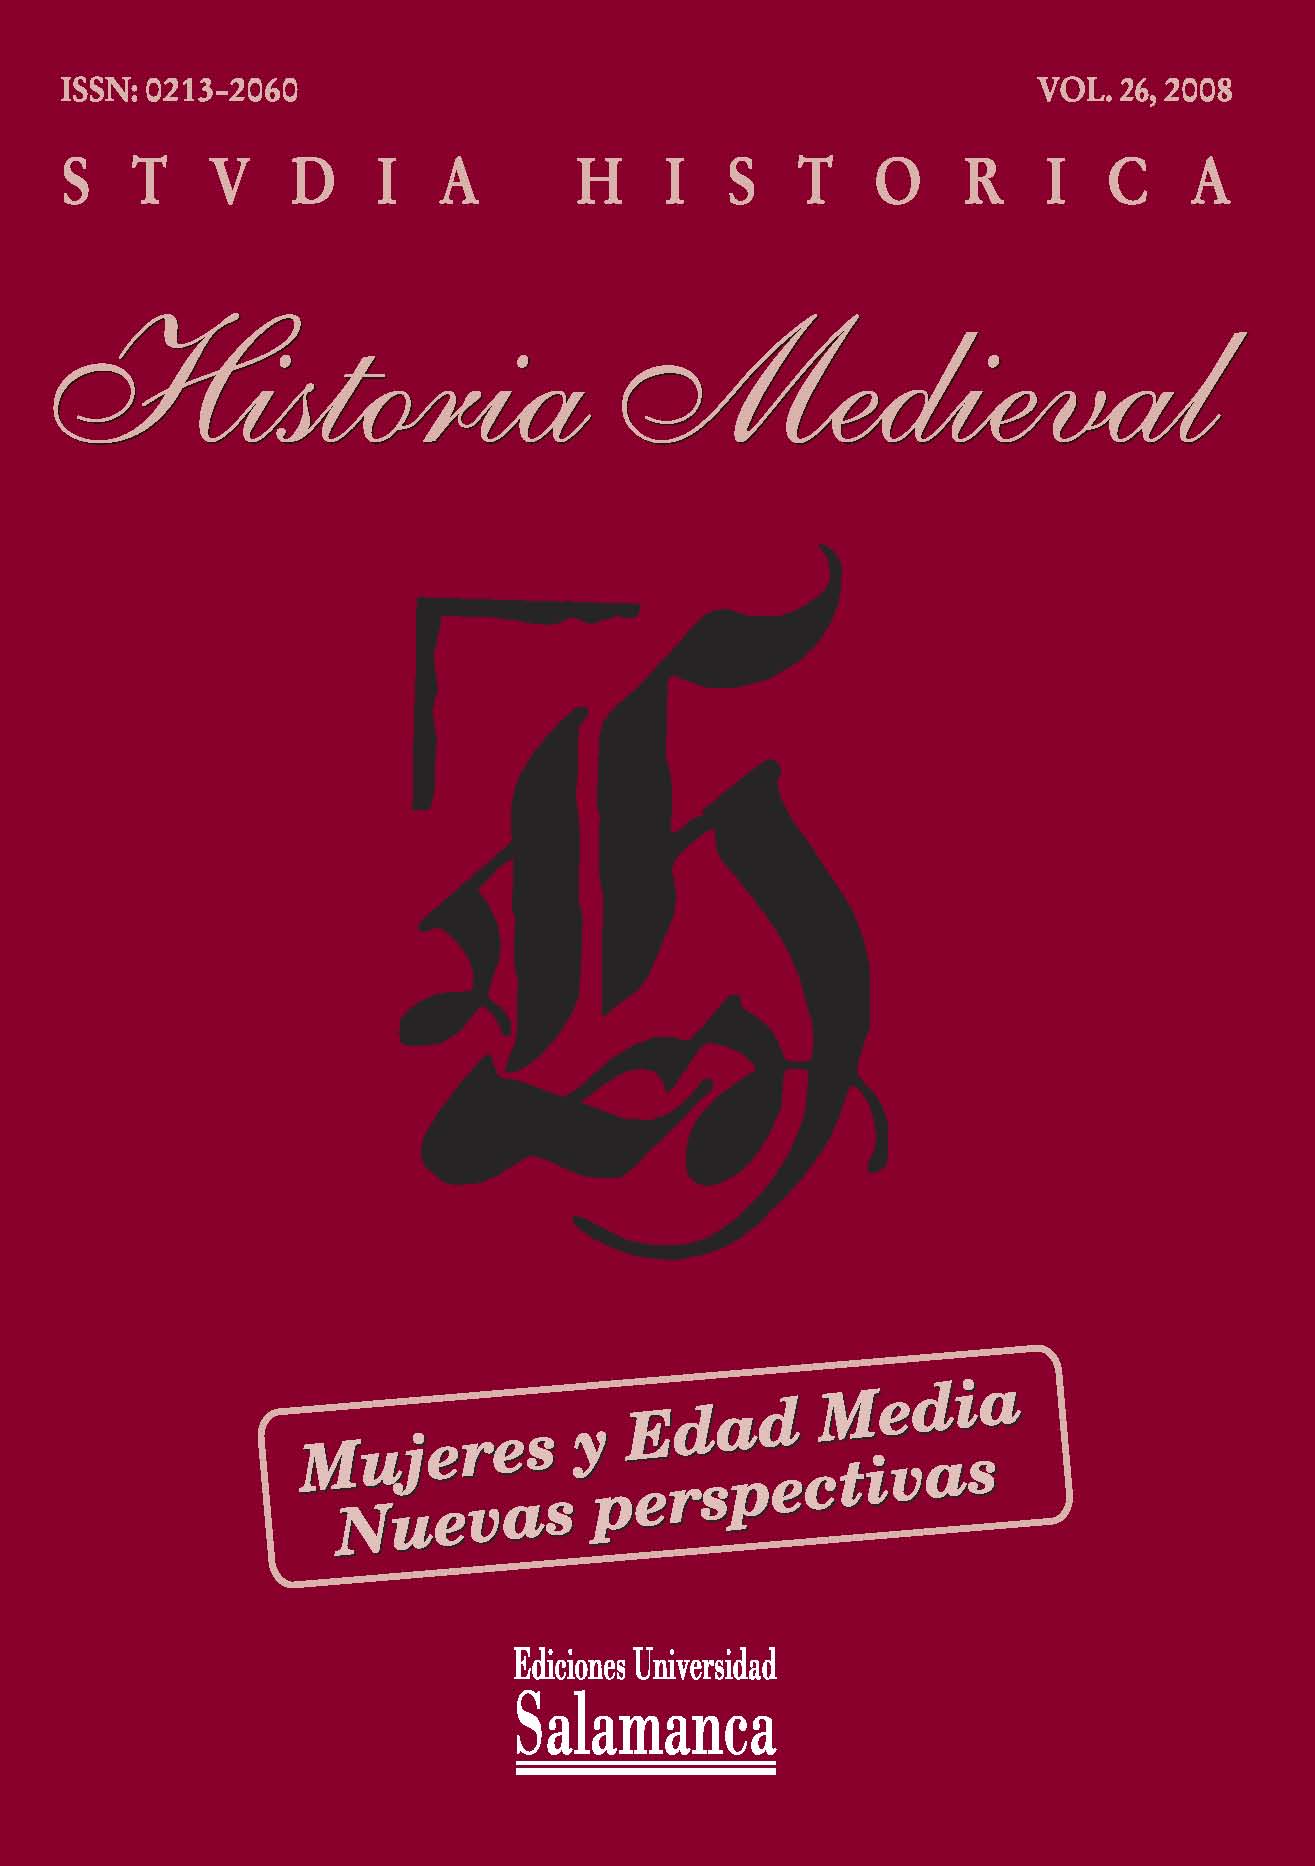                         Ver Vol. 26 (2008): Mujeres y Edad Media: nuevas perspectivas
                    